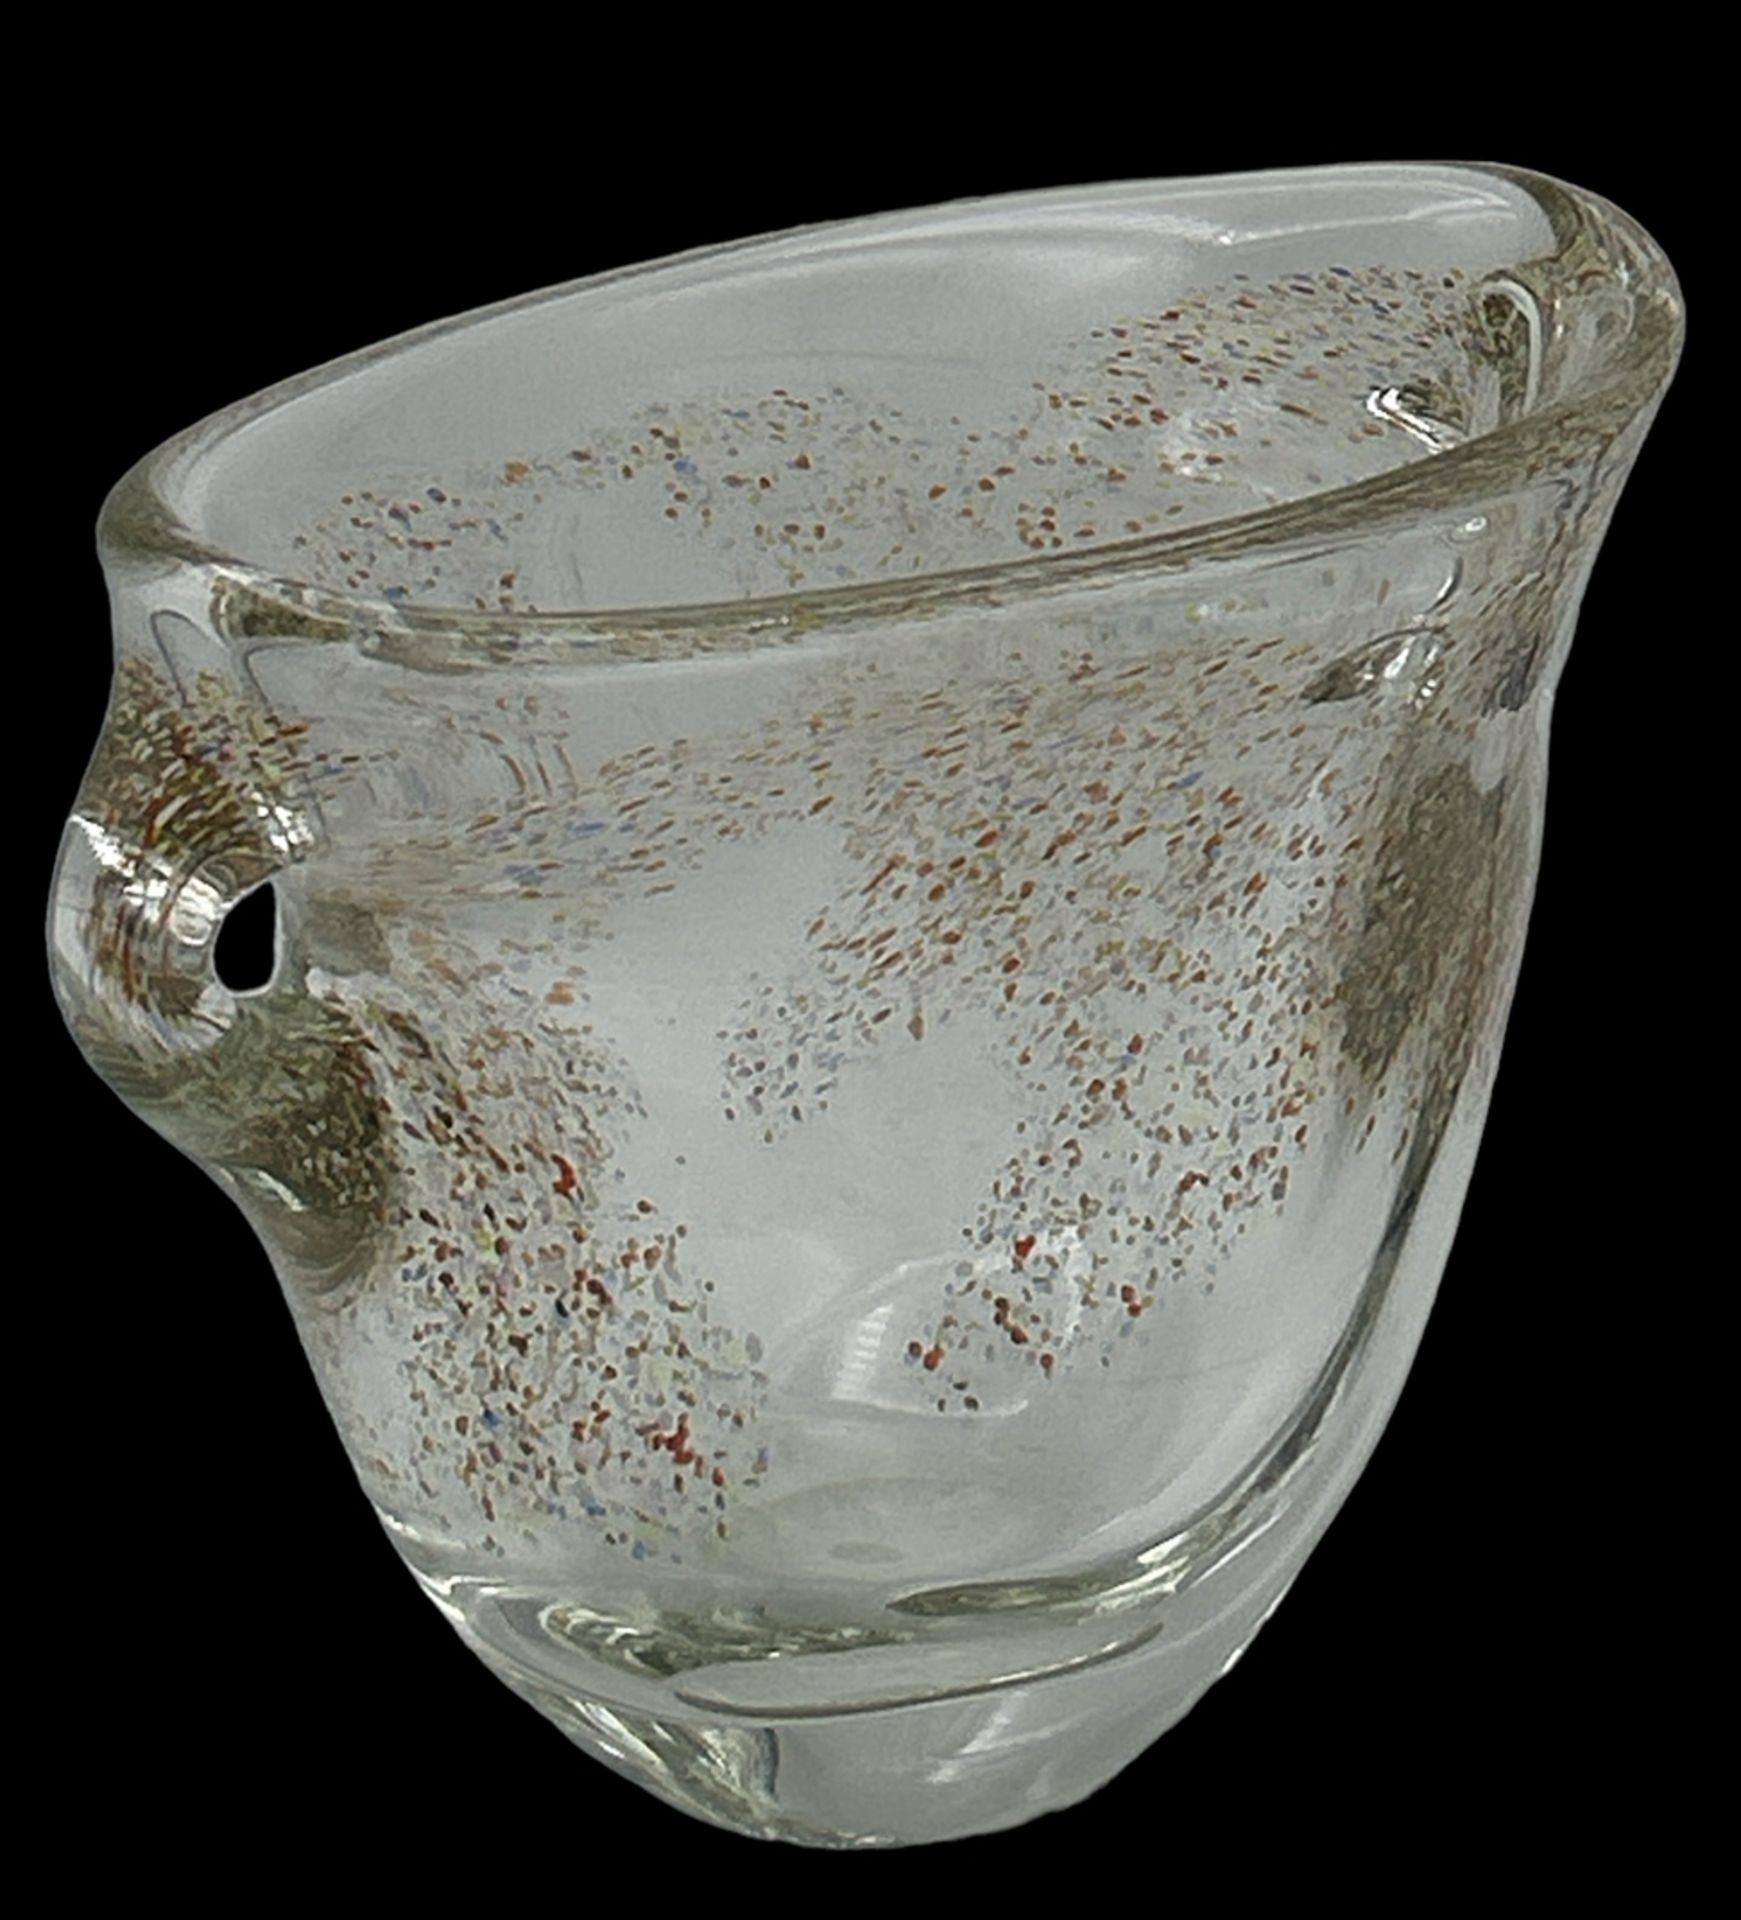 grosse, schwere ovoide Kunstglas-Vase mit bunten Einschmelzungen, H-18 cm, 23x12 cm - Bild 2 aus 3